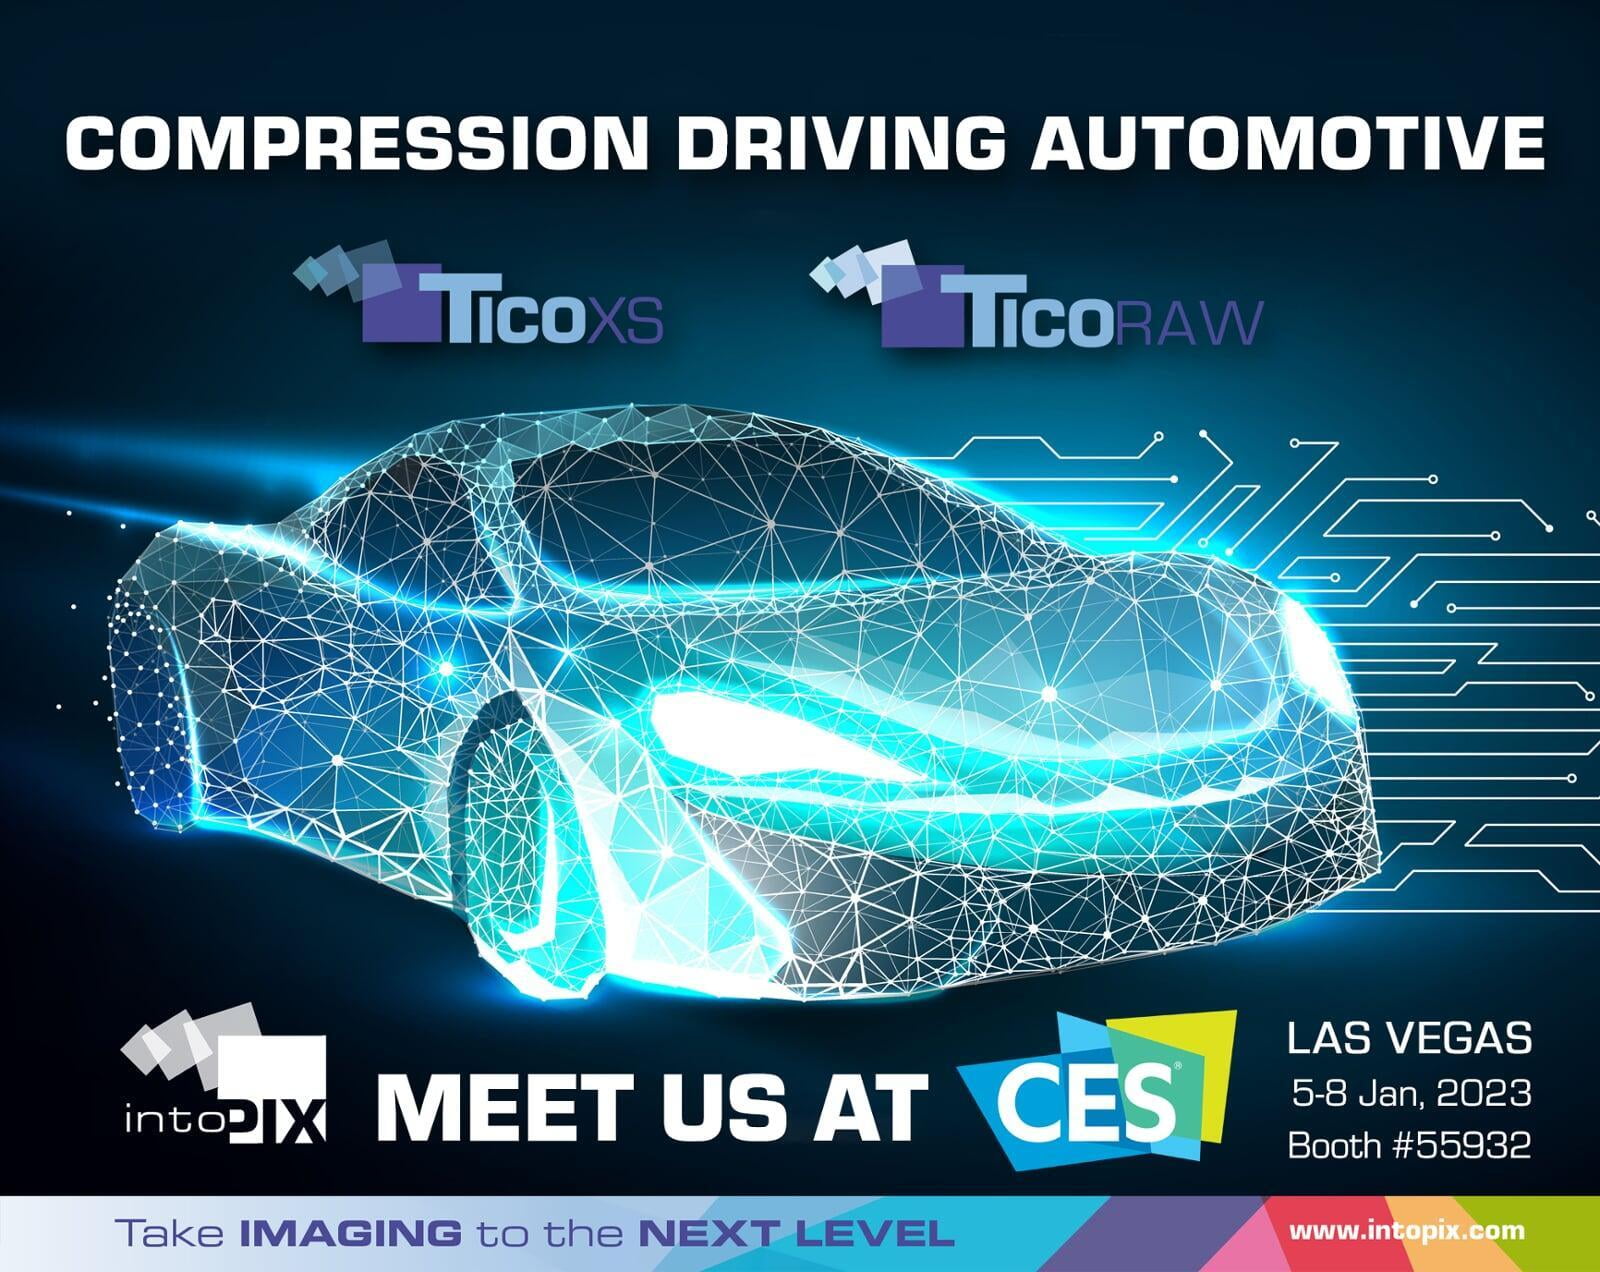 intoPIX 展示推動汽車發展的新型輕量級視頻壓縮標準和技術 CES 2023